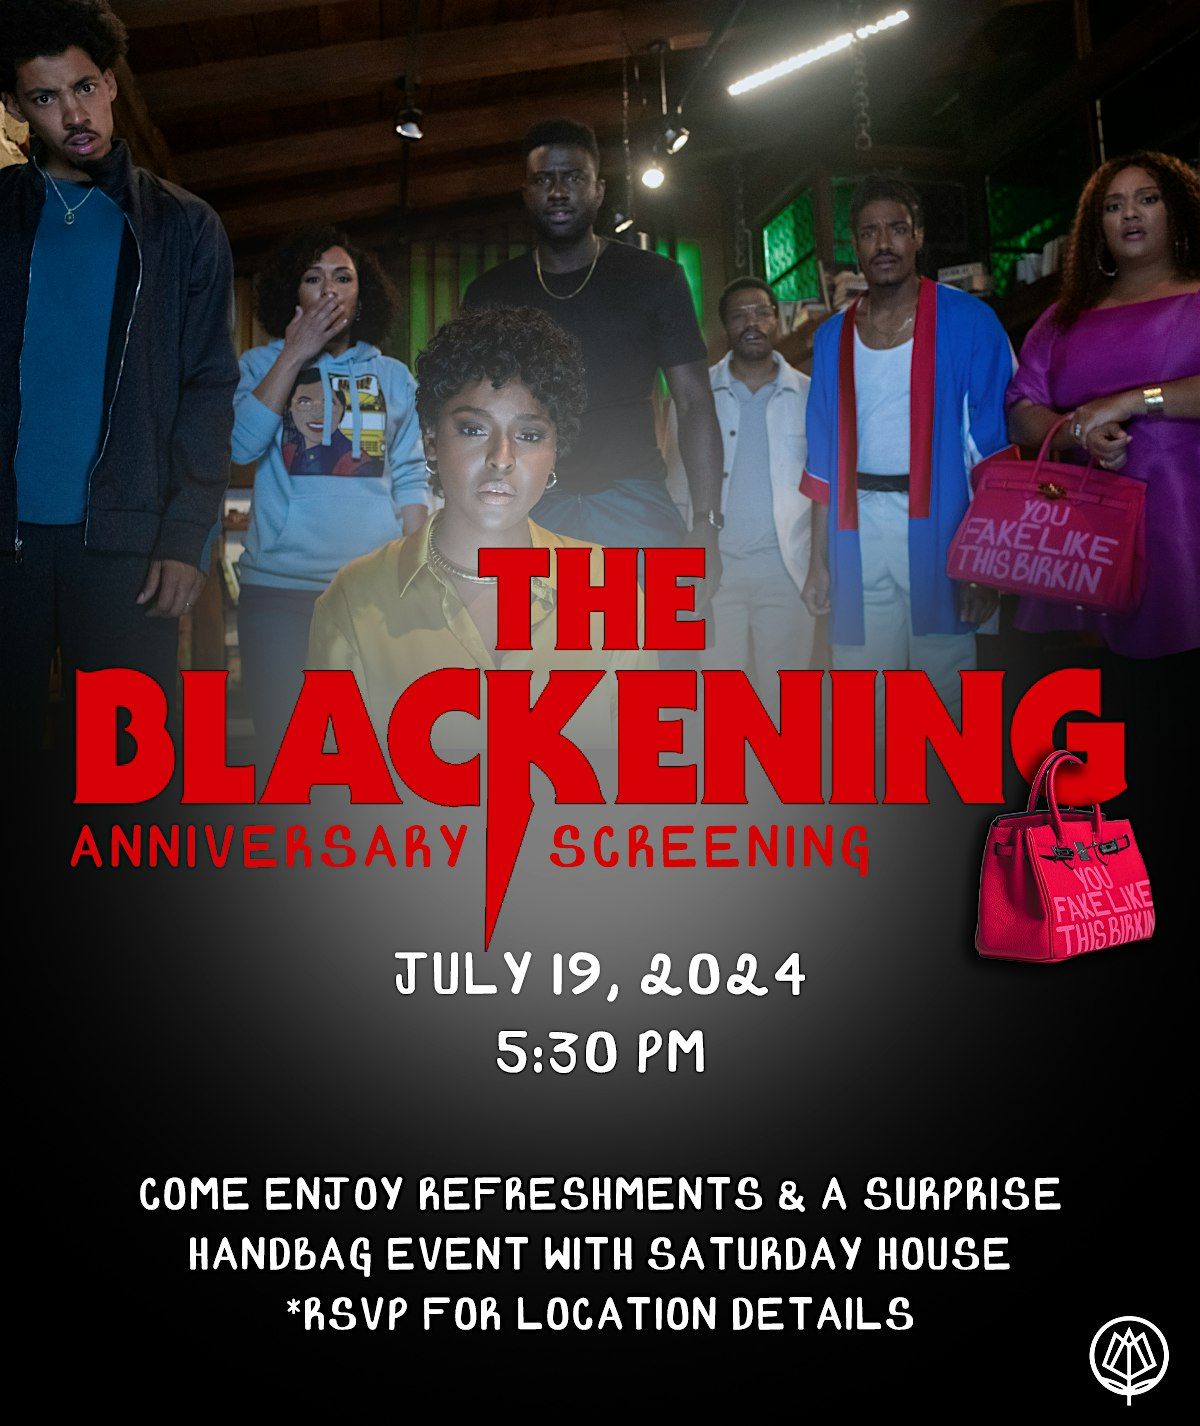 Saturday House Celebrates The Blackening Anniversary Screening